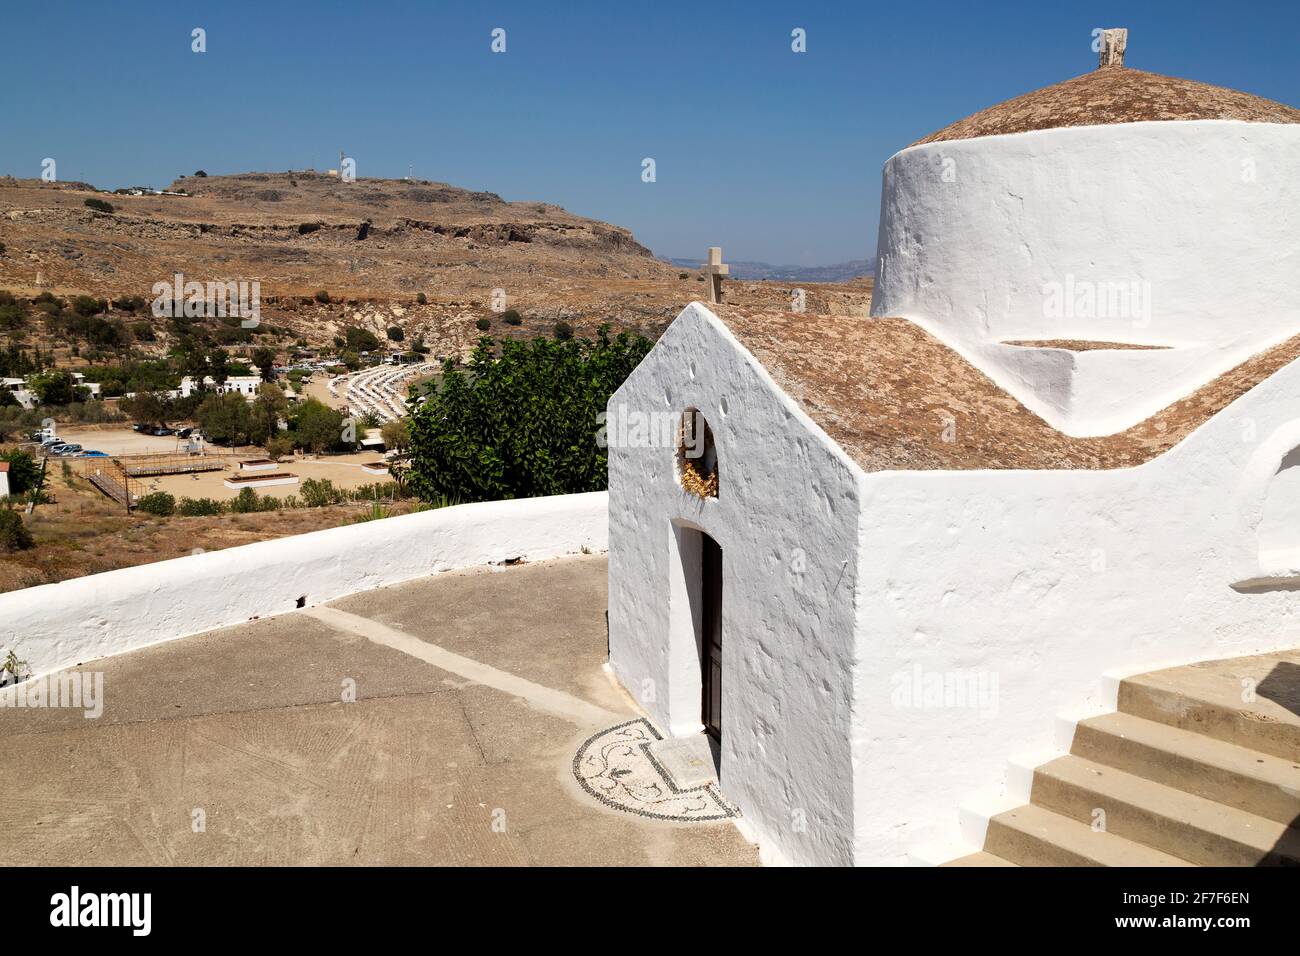 La Capilla de San Jorge Pachymachiotis en Lindos en Rodas, Grecia. La capilla ortodoxa griega blanca se ve bajo un cielo azul claro. Foto de stock